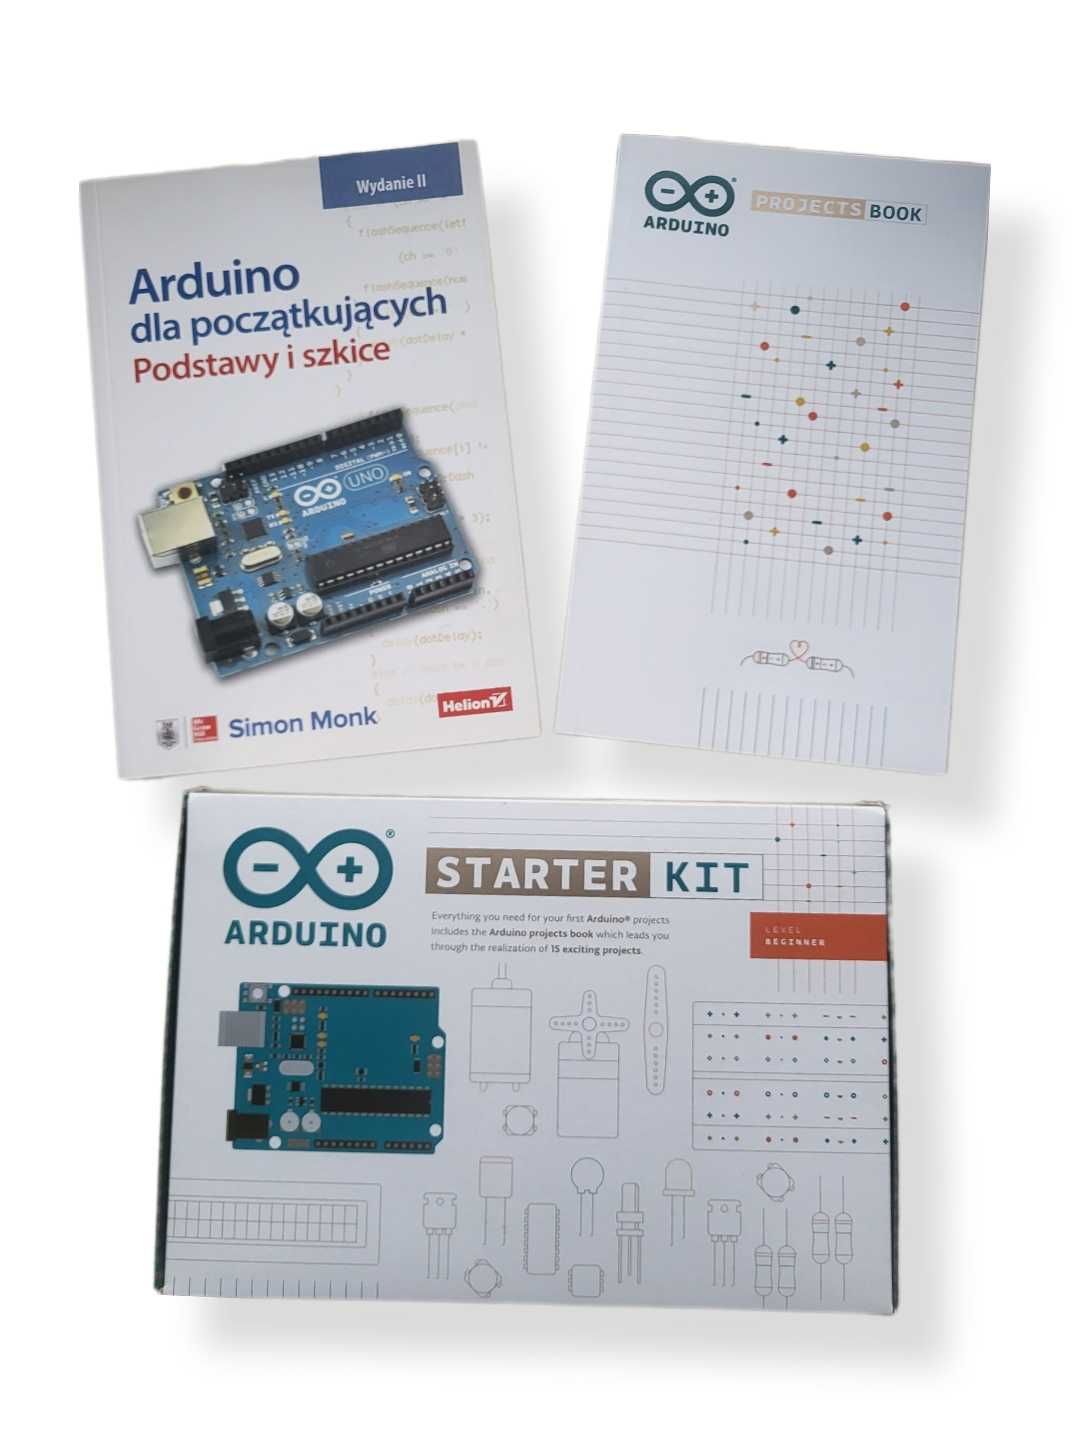 Arduino StarterKit K000007 -  zestaw startowy z płytką Arduino Uno